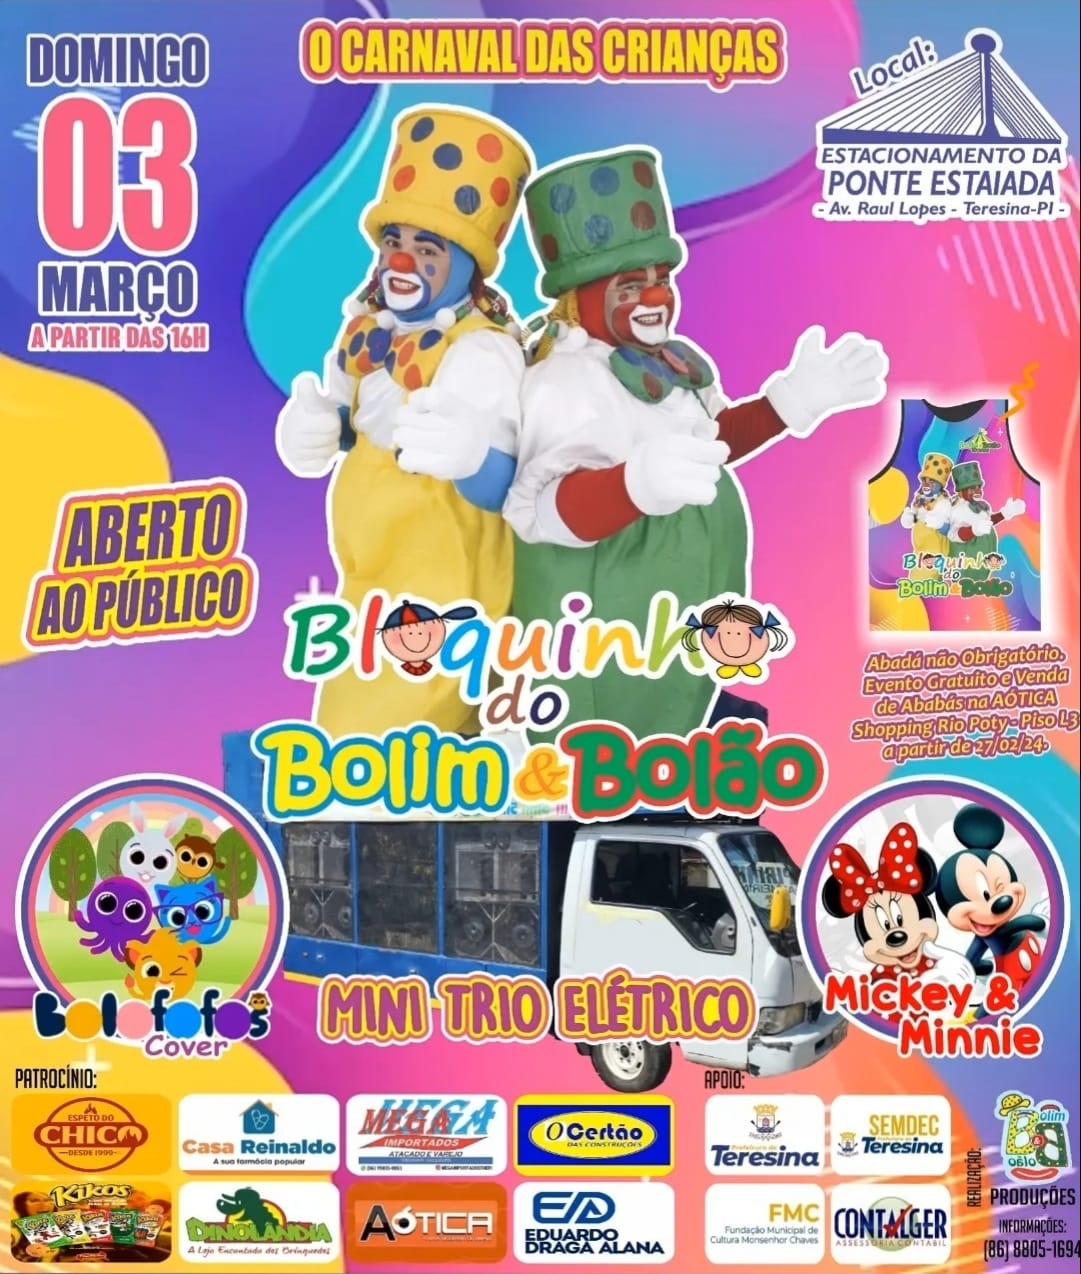 Bolim & Bolão participam de bloquinho carnavalesco neste domingo (03/02), na Ponte Estaiada